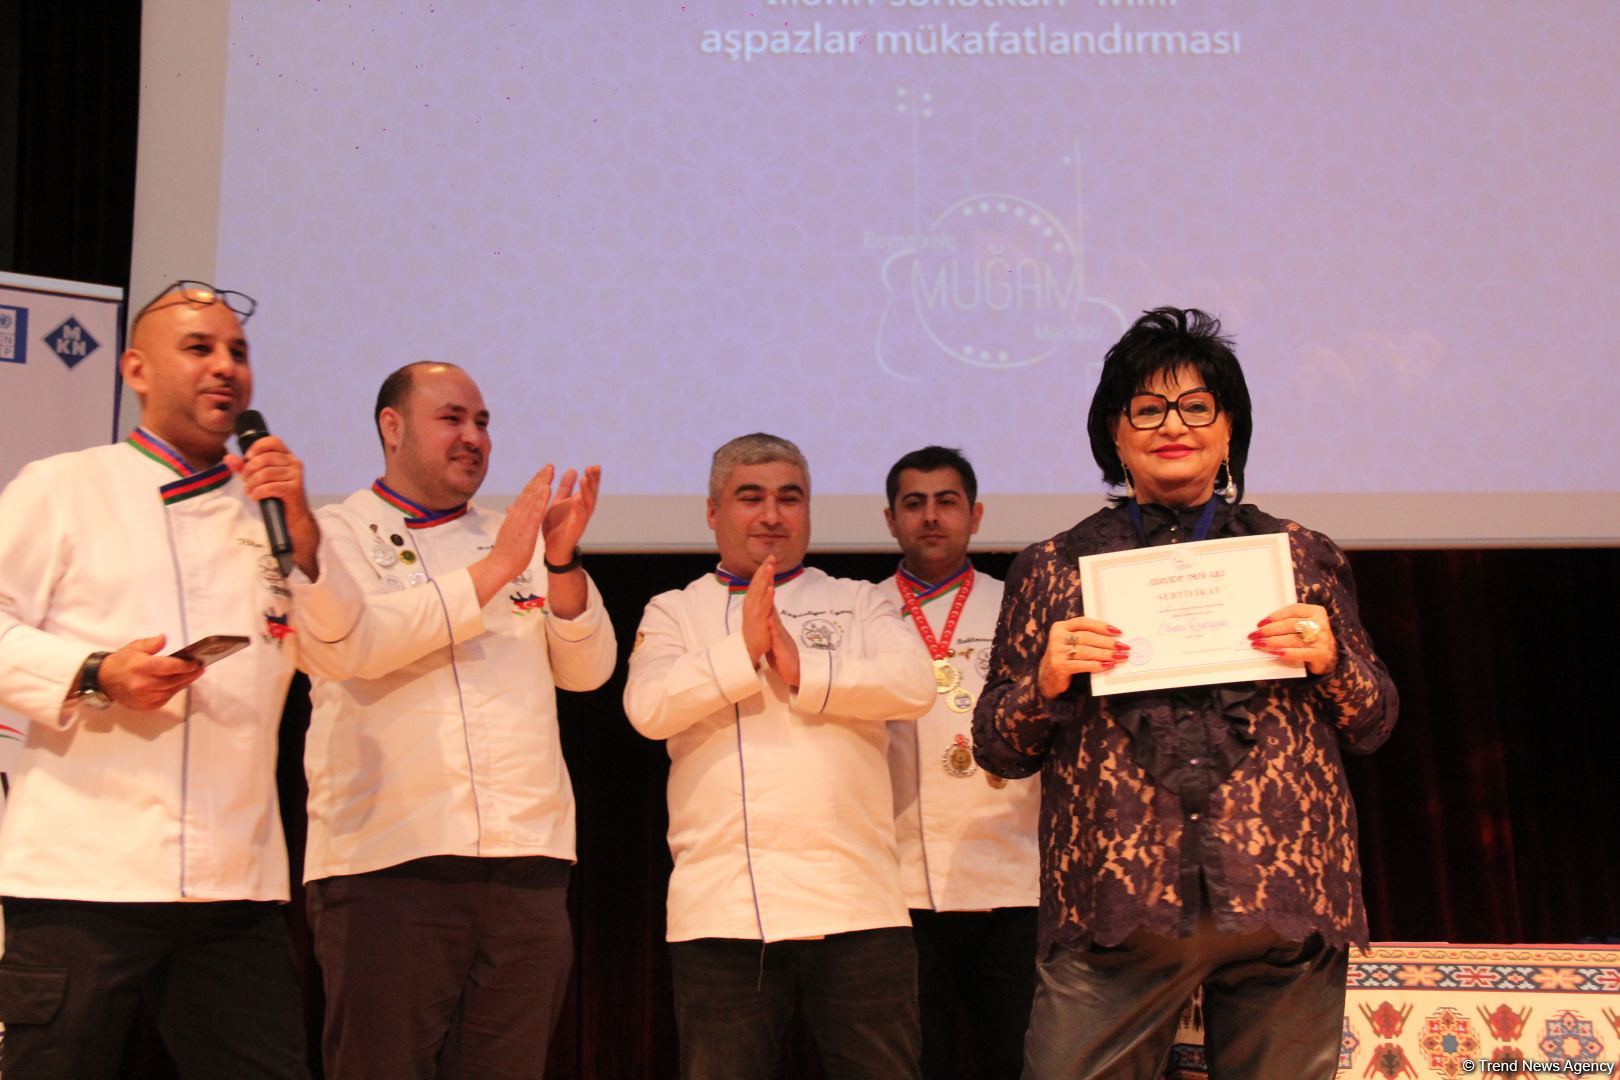 В Баку прошла торжественная церемония вручения национальной премии "Мастер кулинарного искусства" (ФОТО)